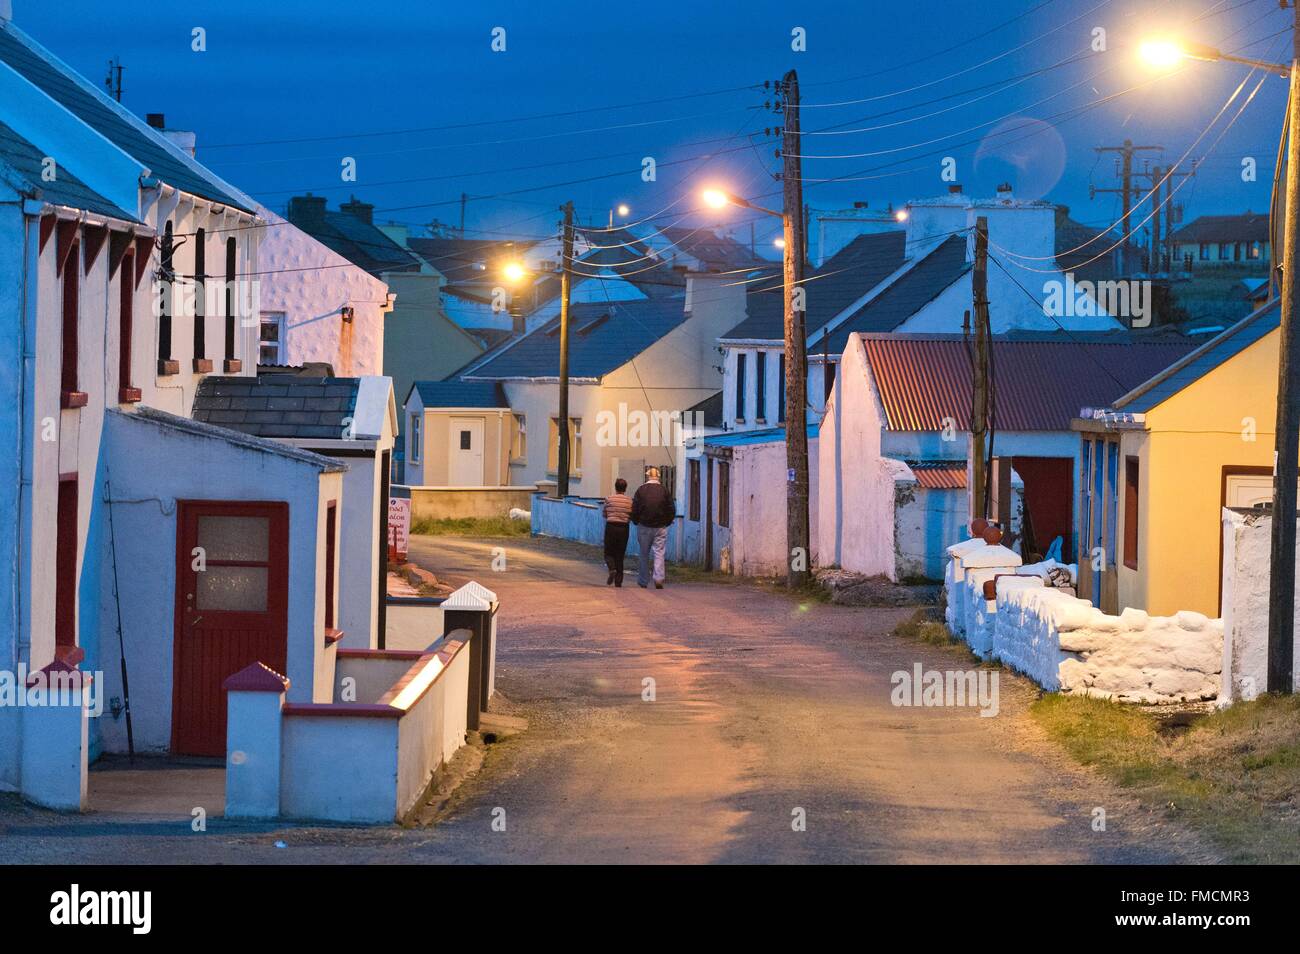 Irlanda, County Donegal, Tory Island, un uomo e una donna a piedi nel villaggio al crepuscolo Foto Stock